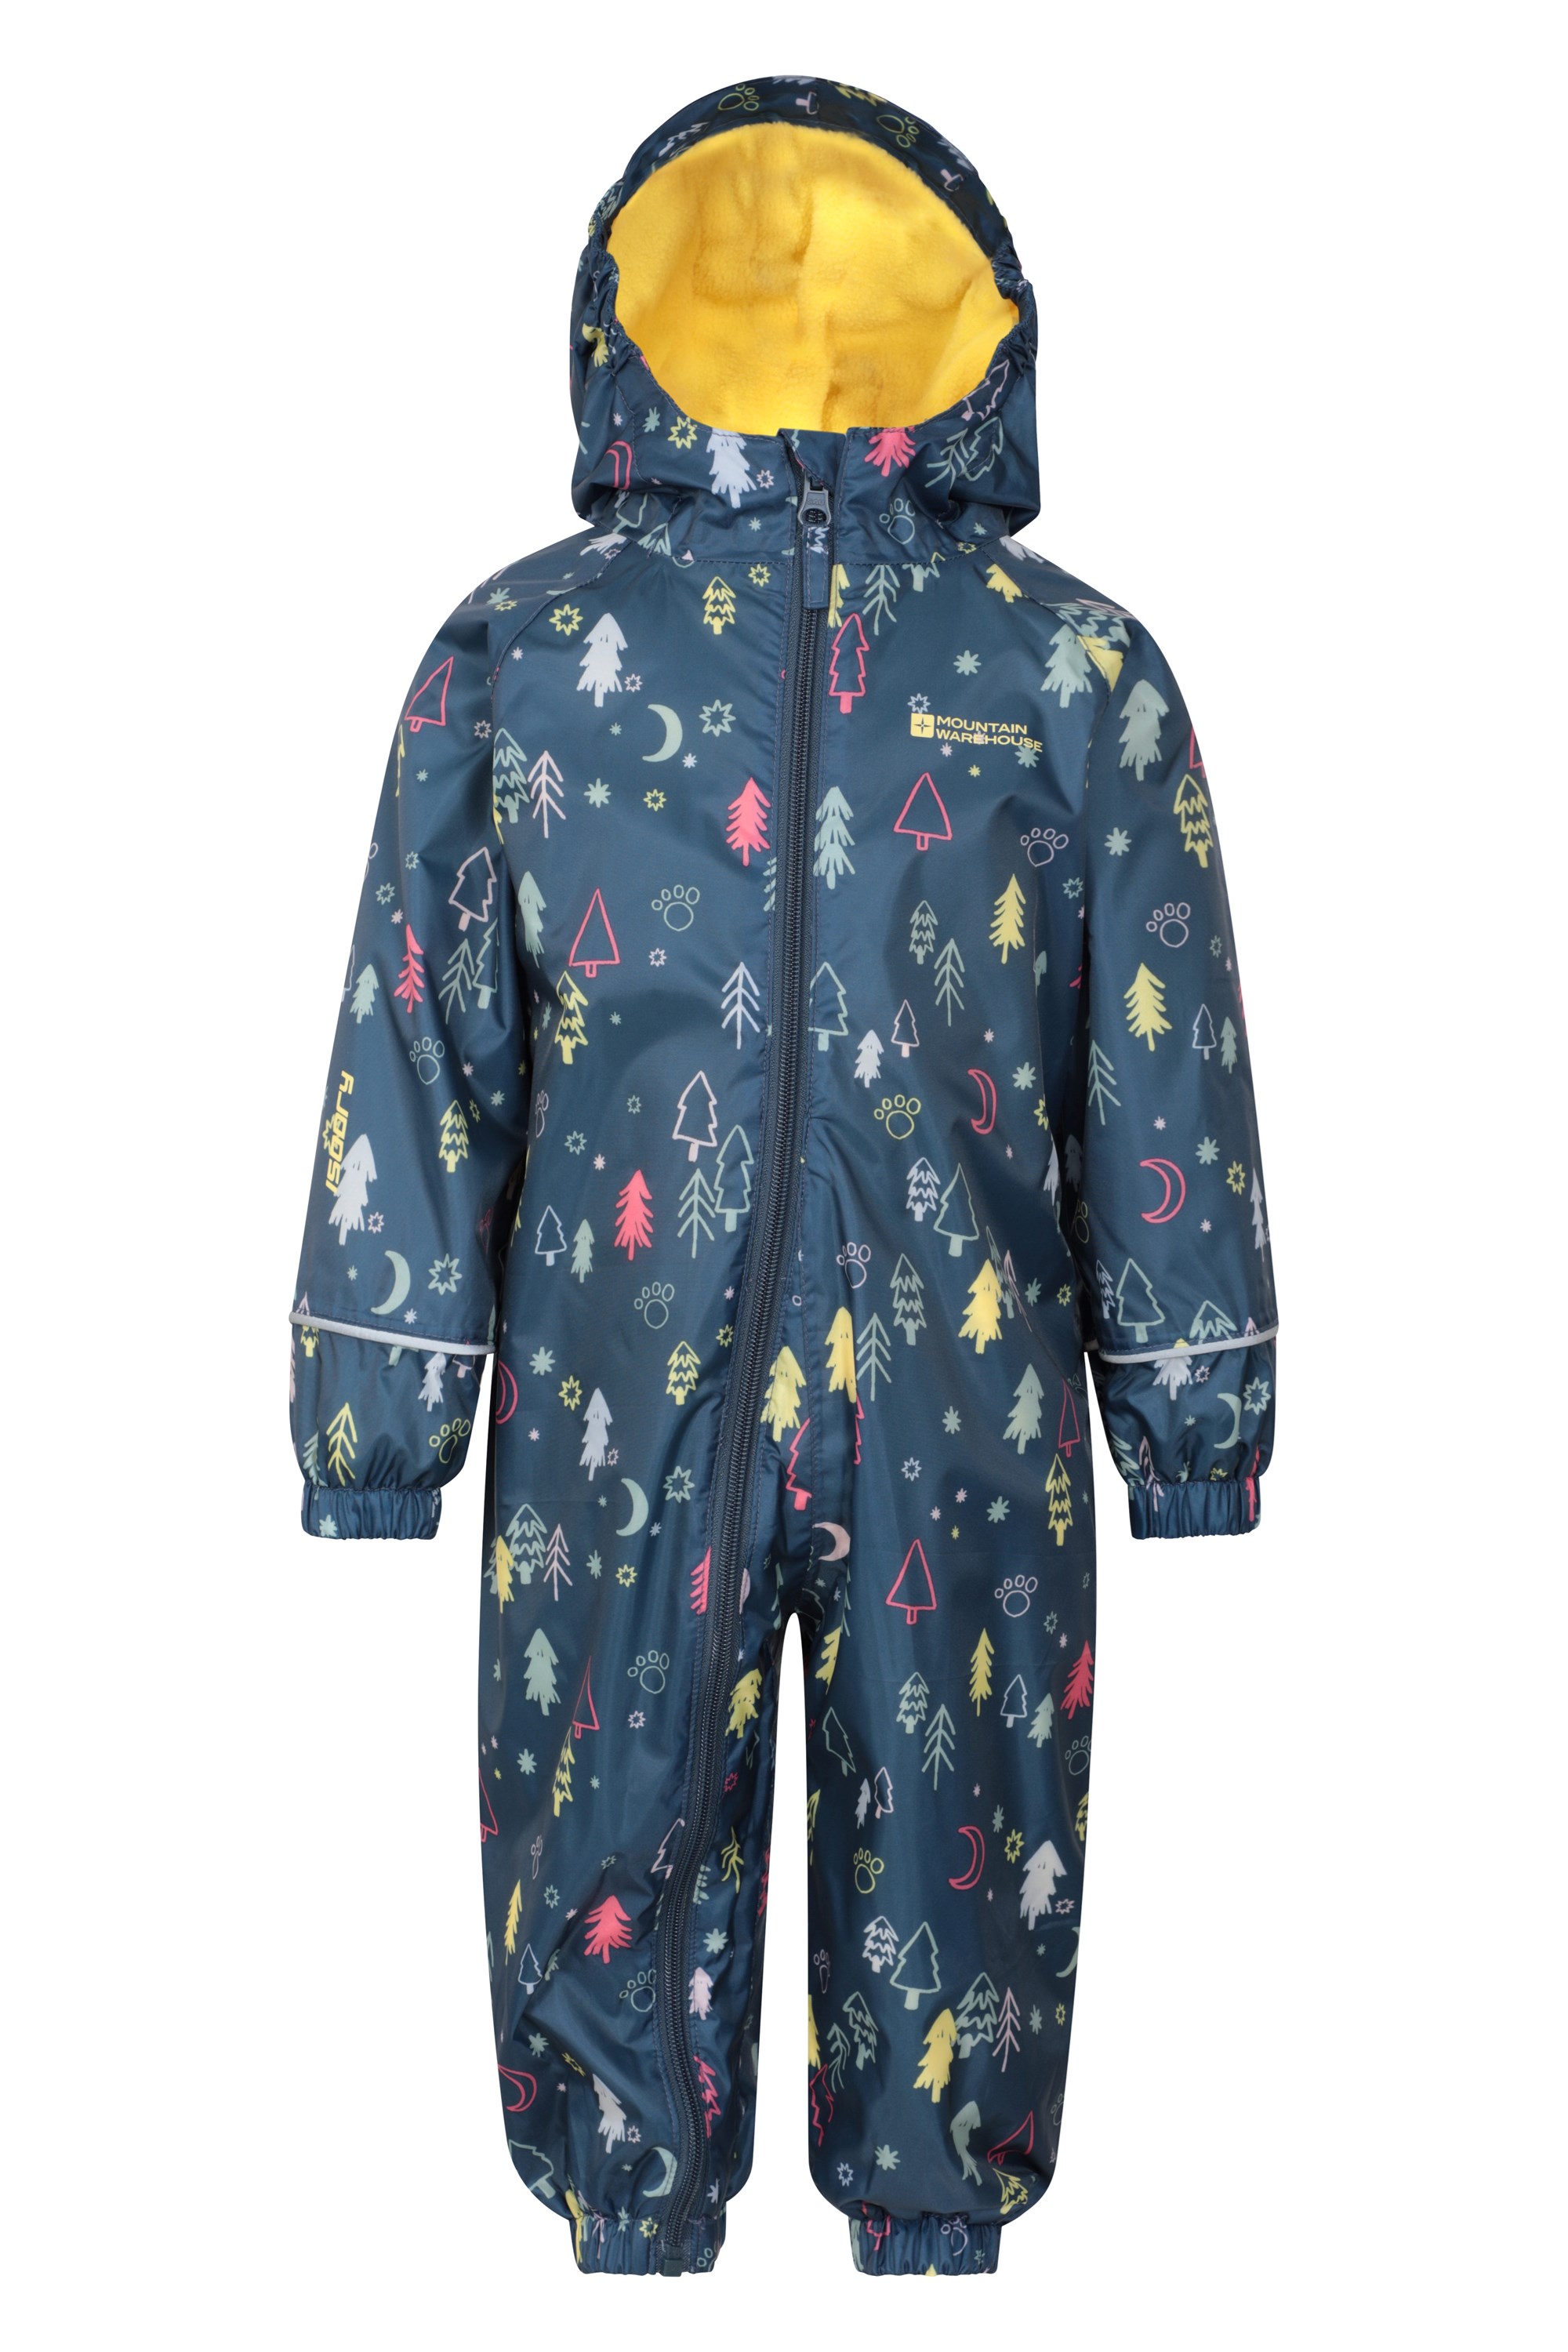 Spright Printed Junior Waterproof Rain Suit - Navy